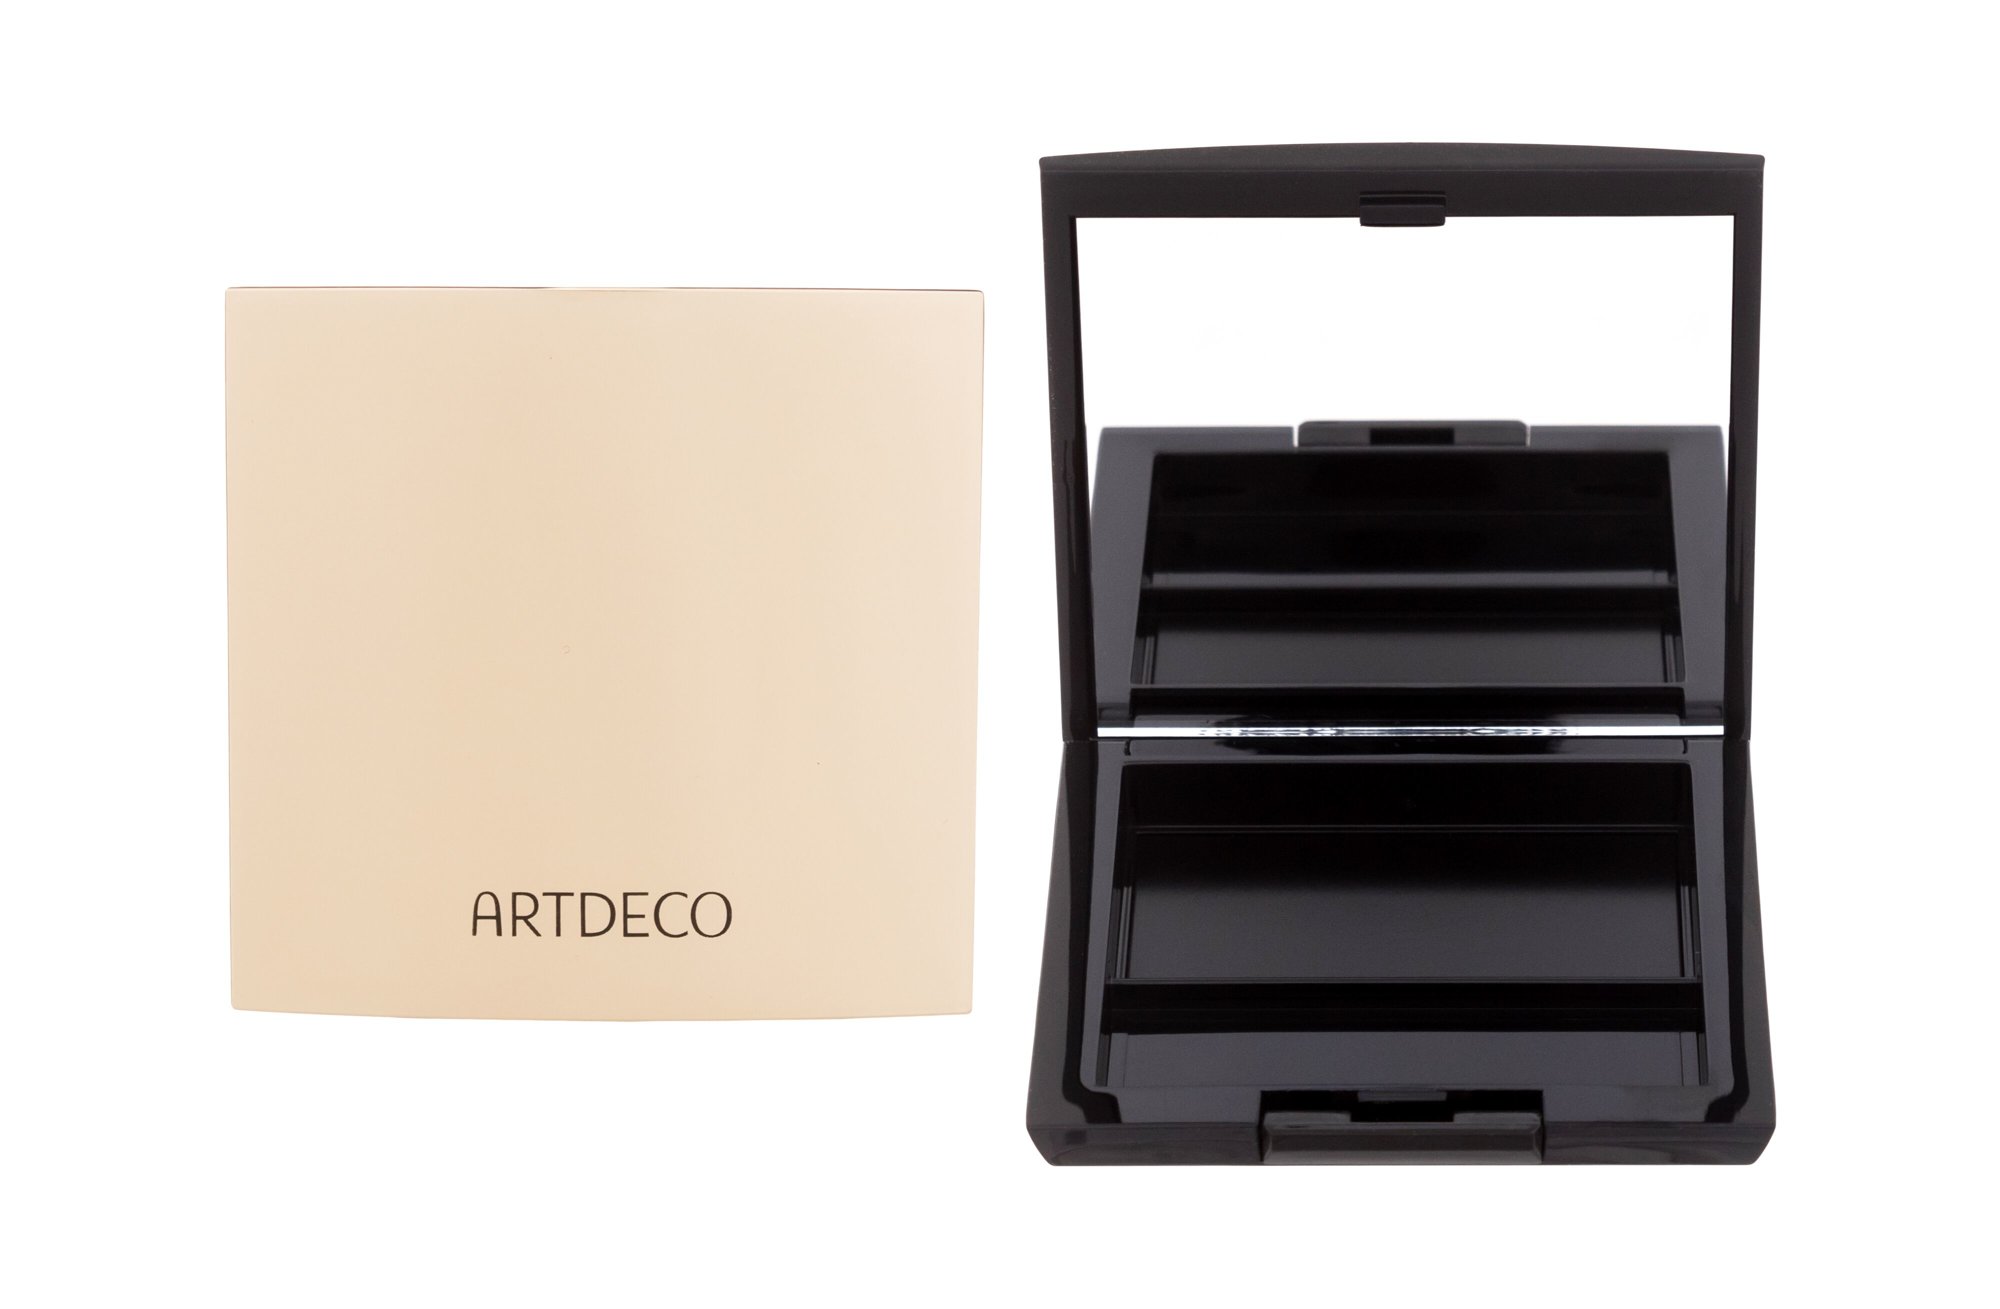 Artdeco Beauty Box Trio Limited Edition pildoma dėžutė